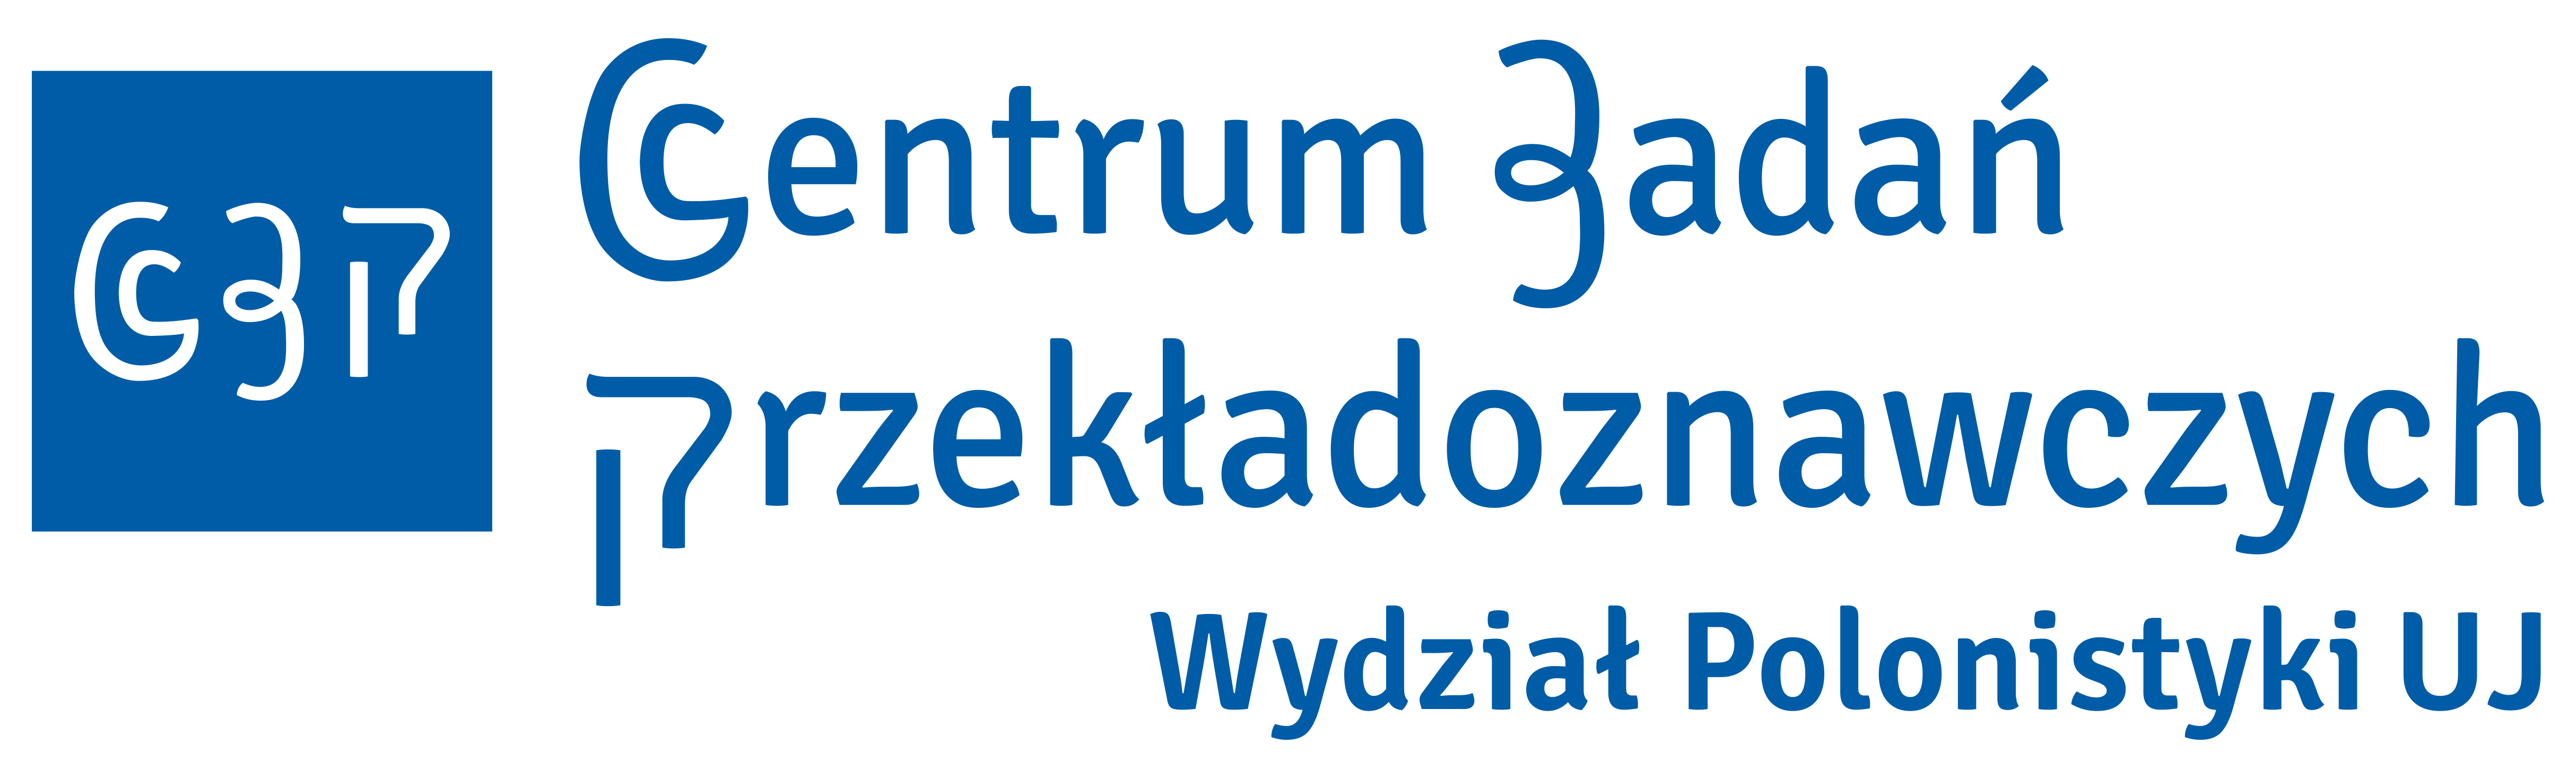 logo centrum przekładoznawstwa